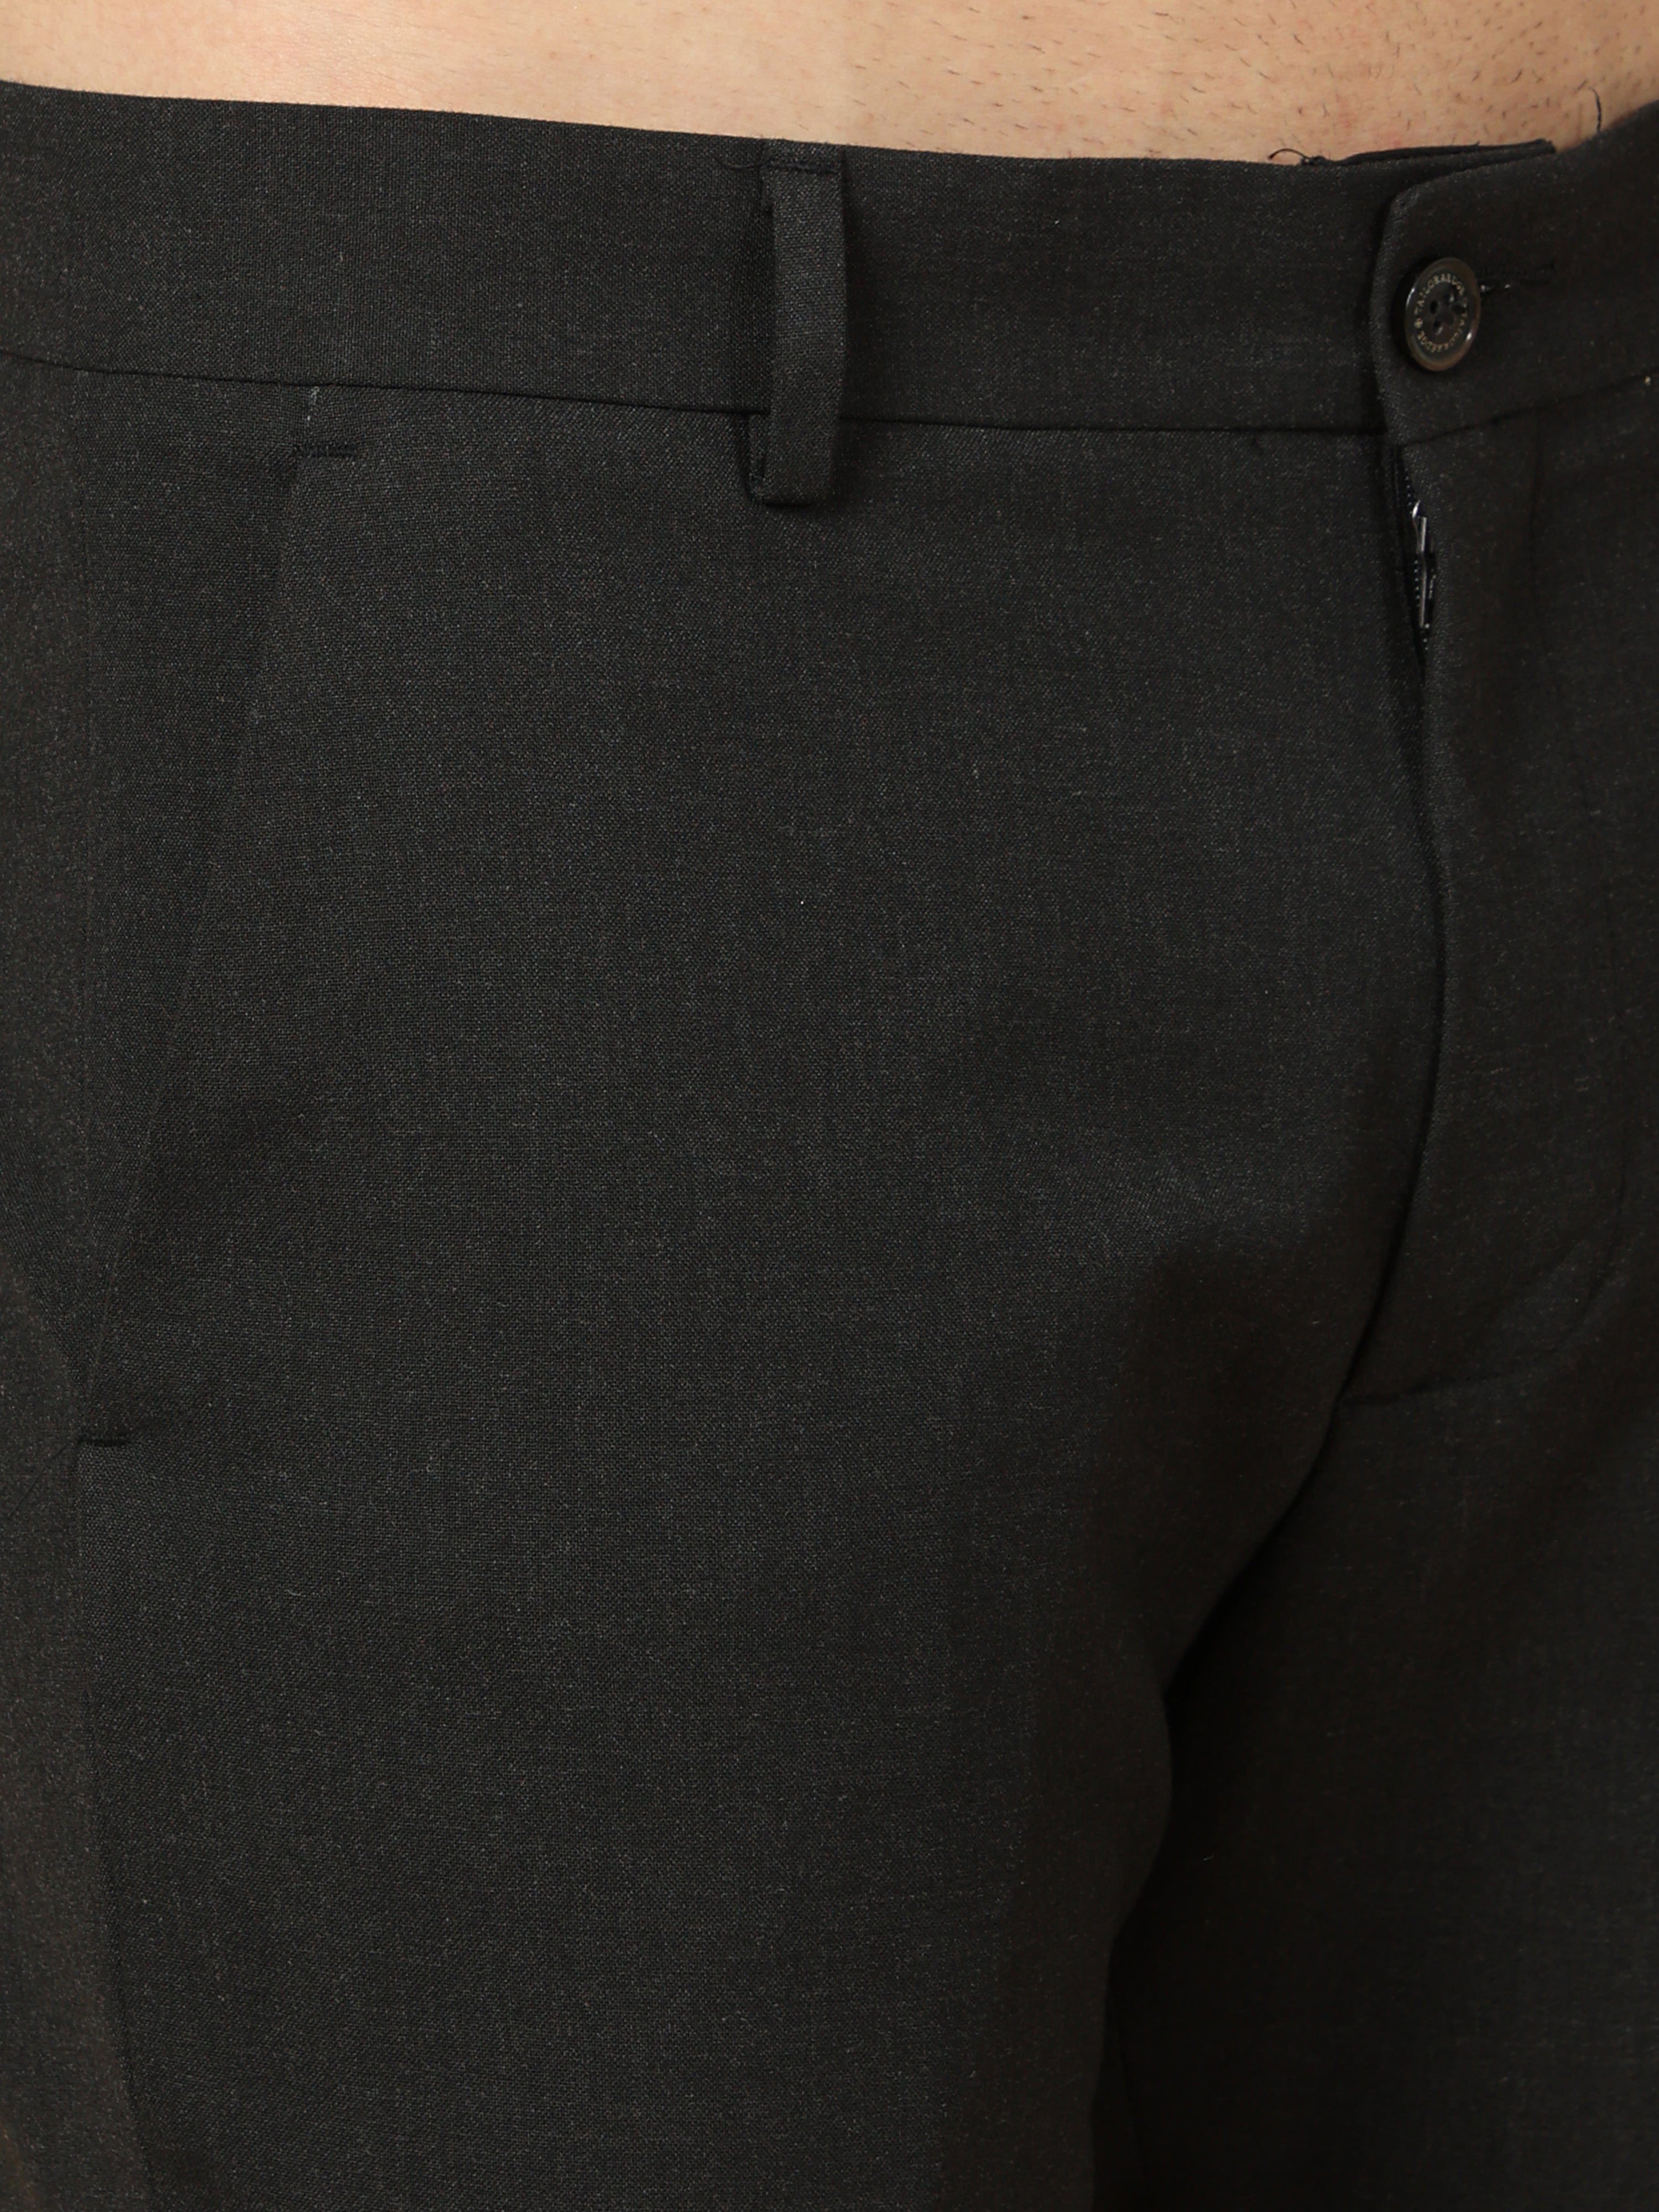 Essential Black Sleek Formal Trouser